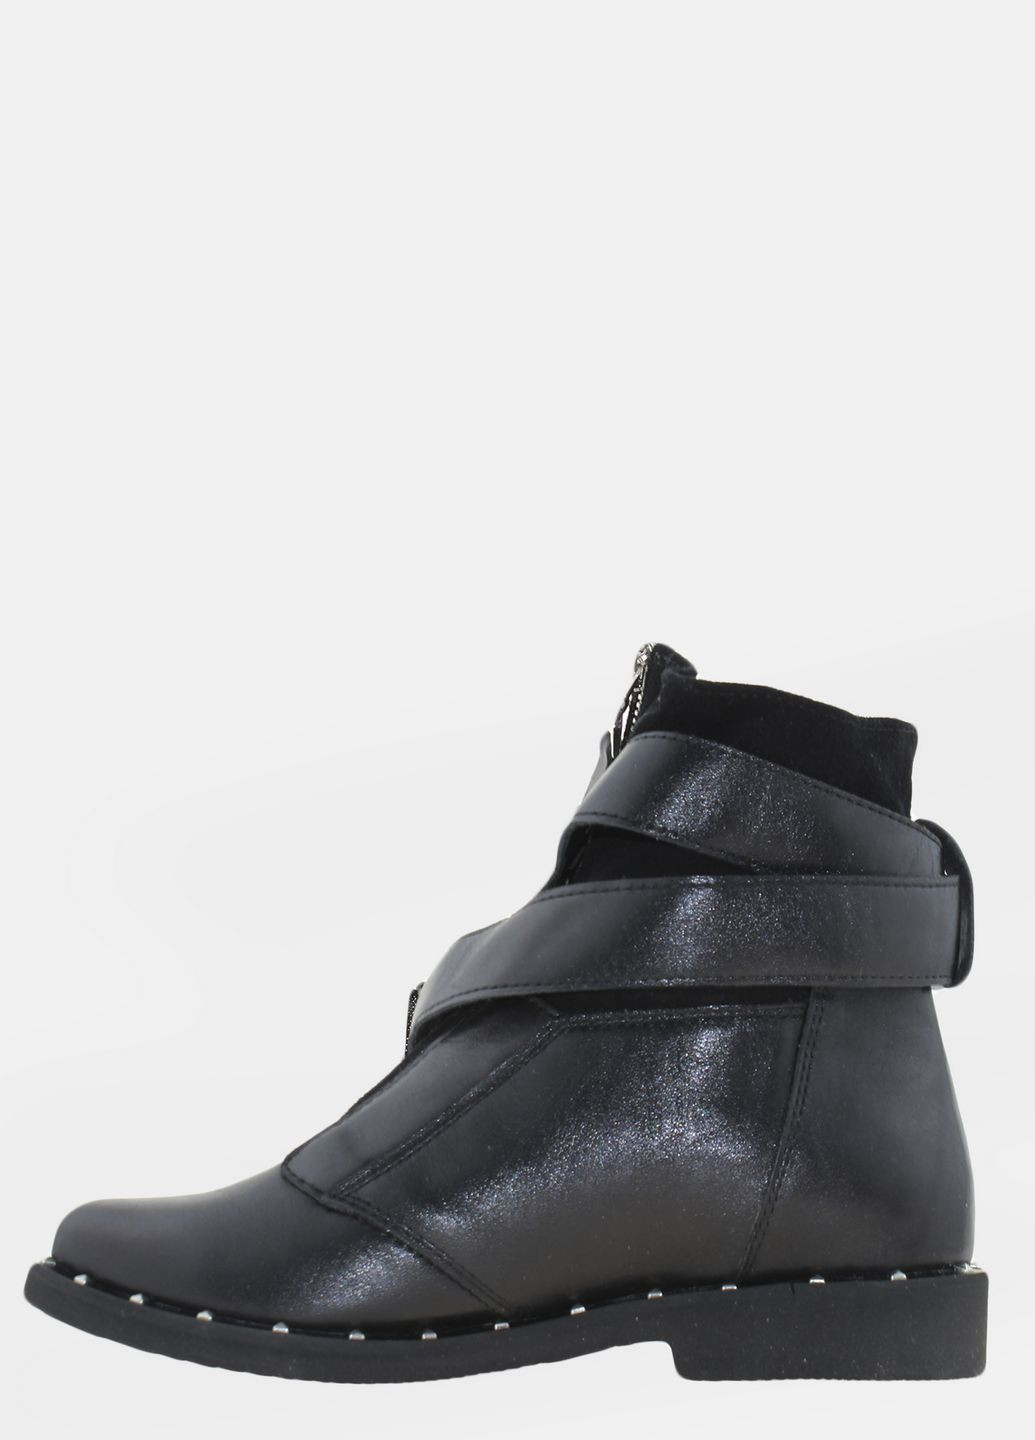 Осенние ботинки r1263 черный Prellesta из натуральной замши